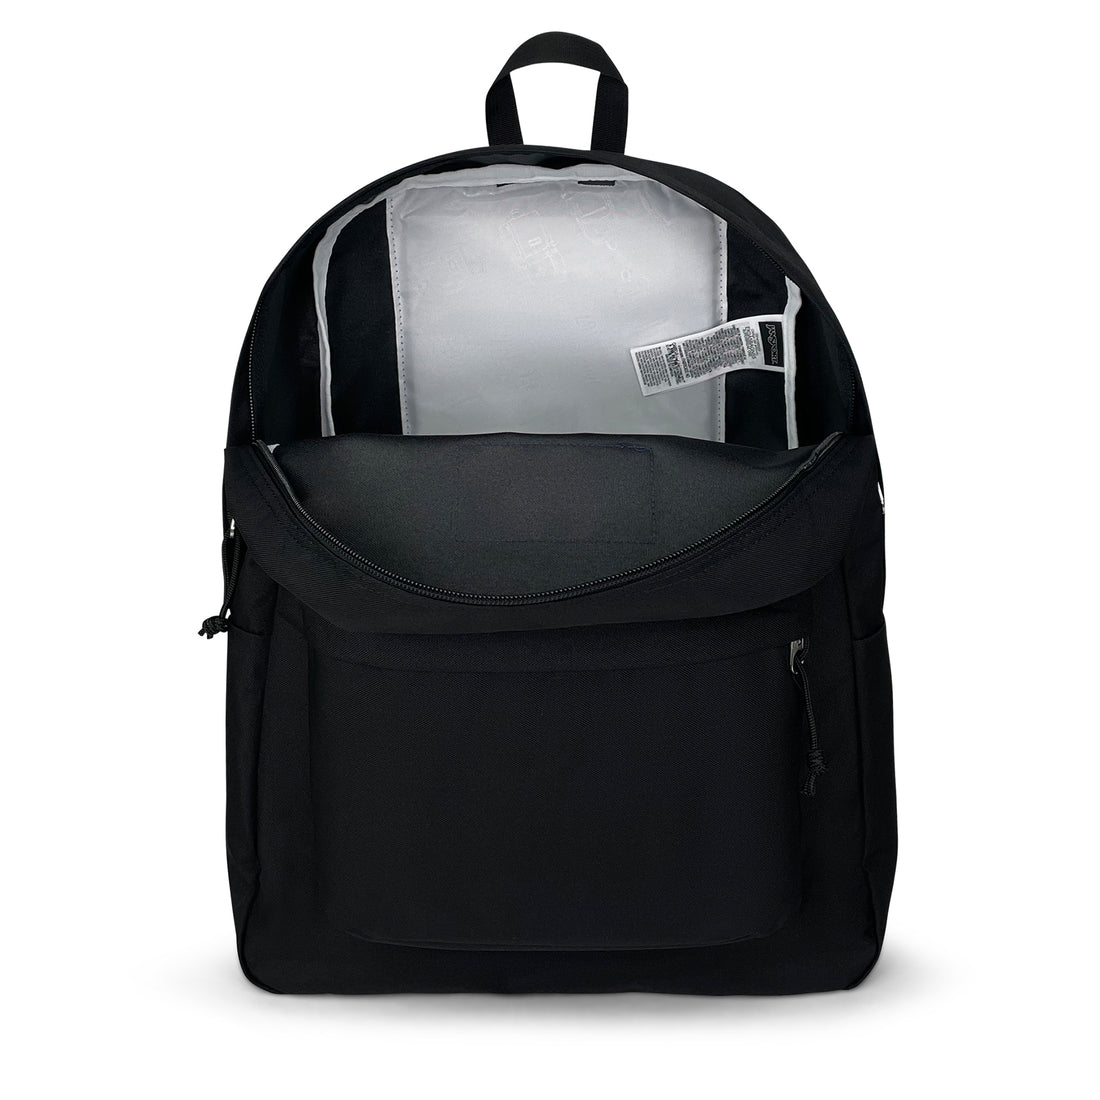 Superbreak One Backpack-Backpack-Jansport-Black-SchoolBagsAndStuff